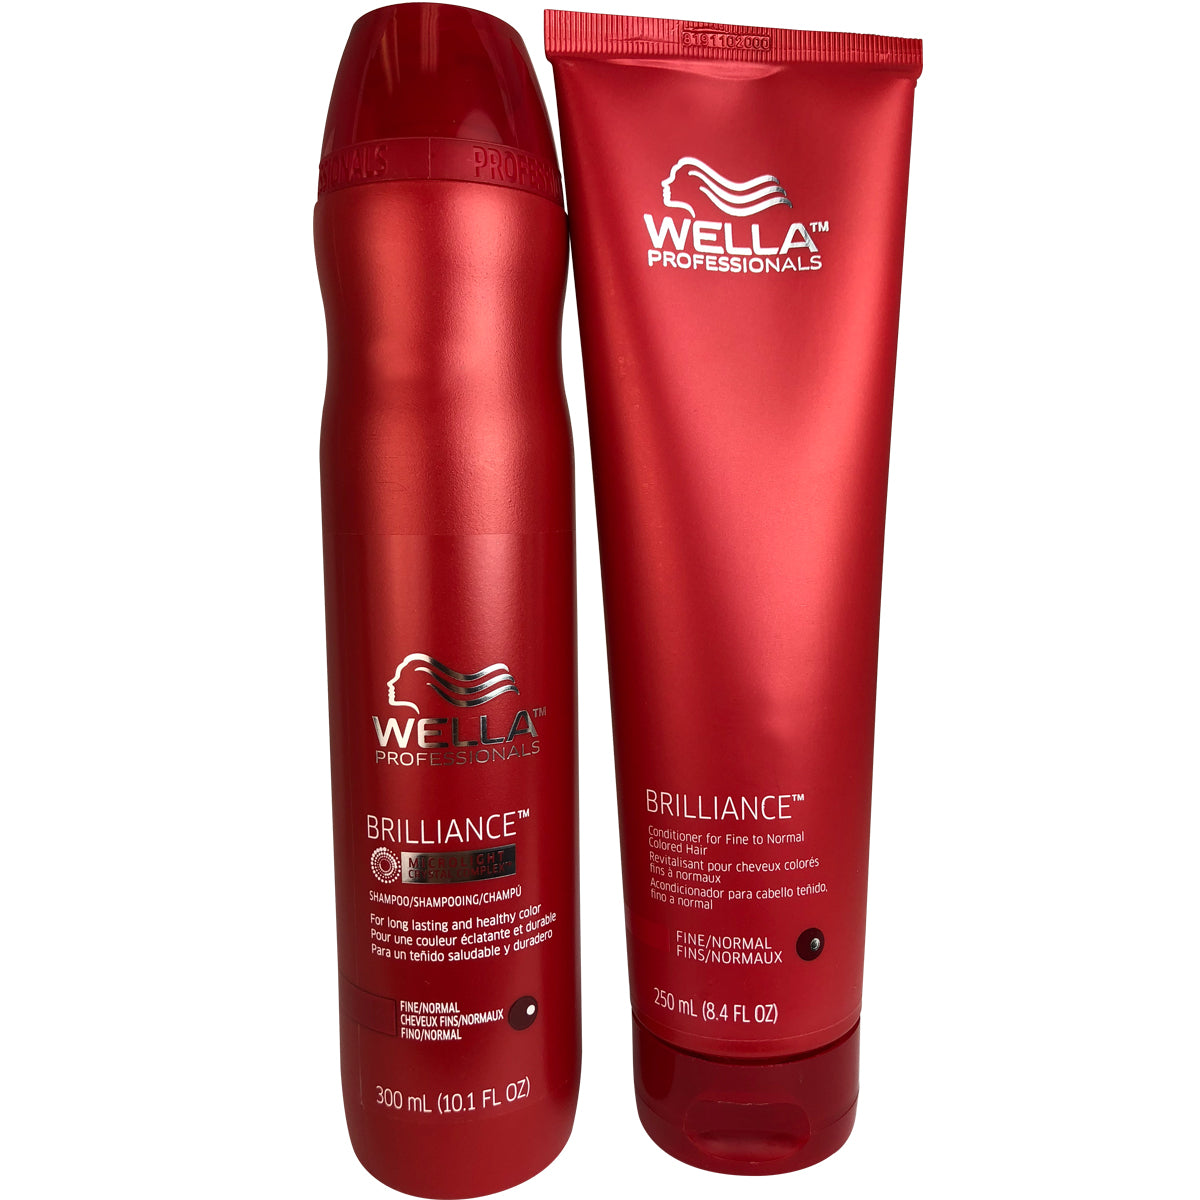 WELLA Invigo Brilliance Color Protection DUO Shampoo 10.1 oz and Vibrant Color Conditioner 8.4 oz for Normal Hair